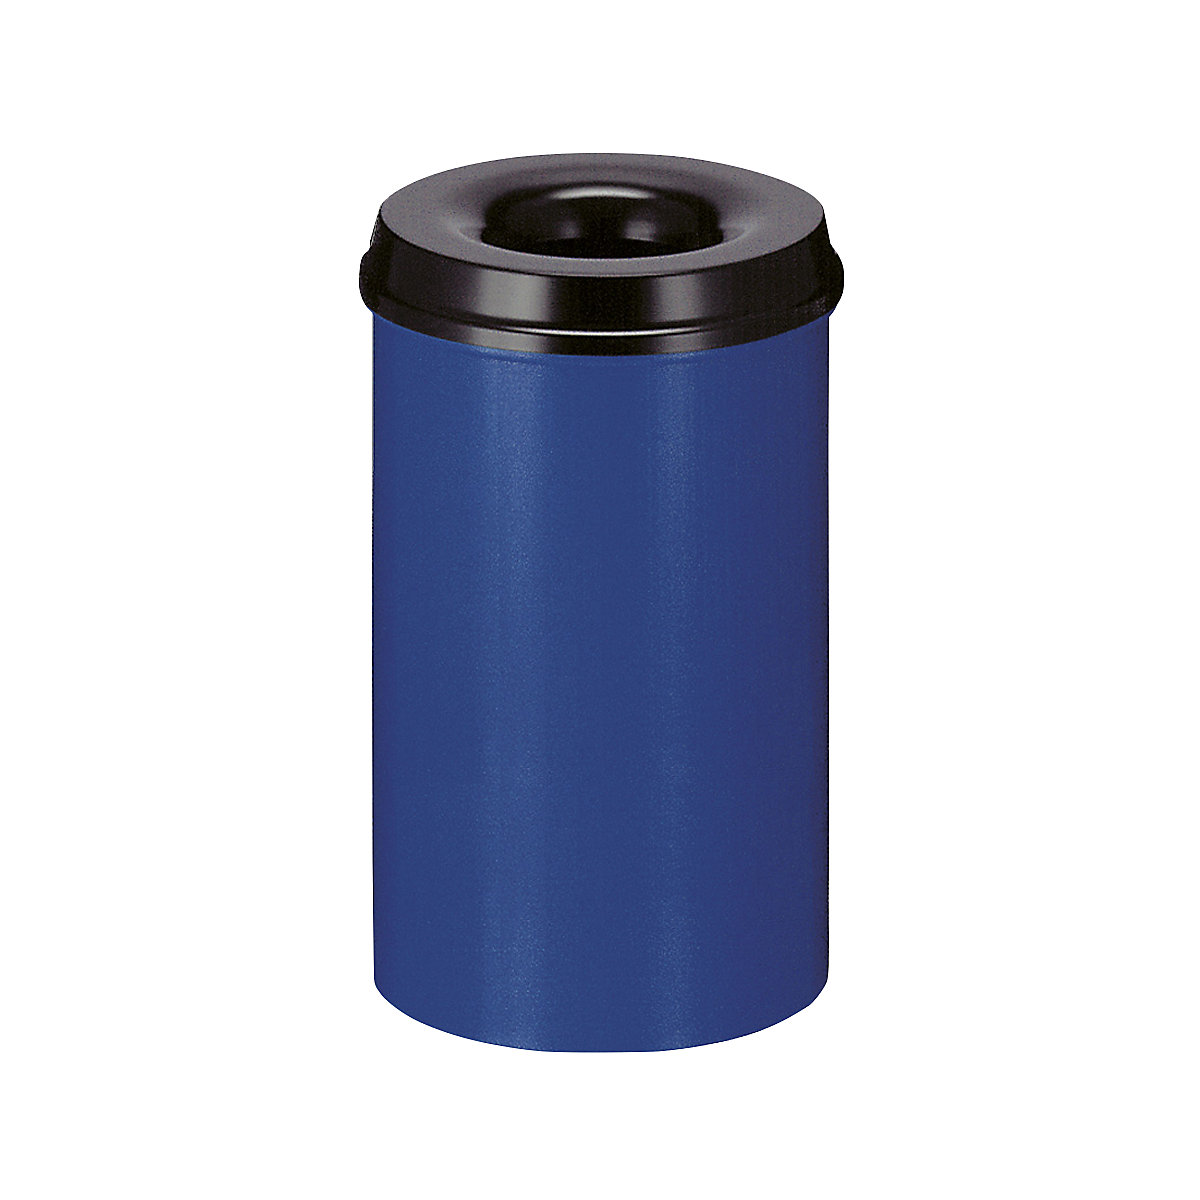 Sigurnosna kanta za papir, čelik, samogasiva, volumen 20 l, VxØ 426 x 260 mm, korpus u plavoj boji / vrh za gašenje u crnoj boji-7